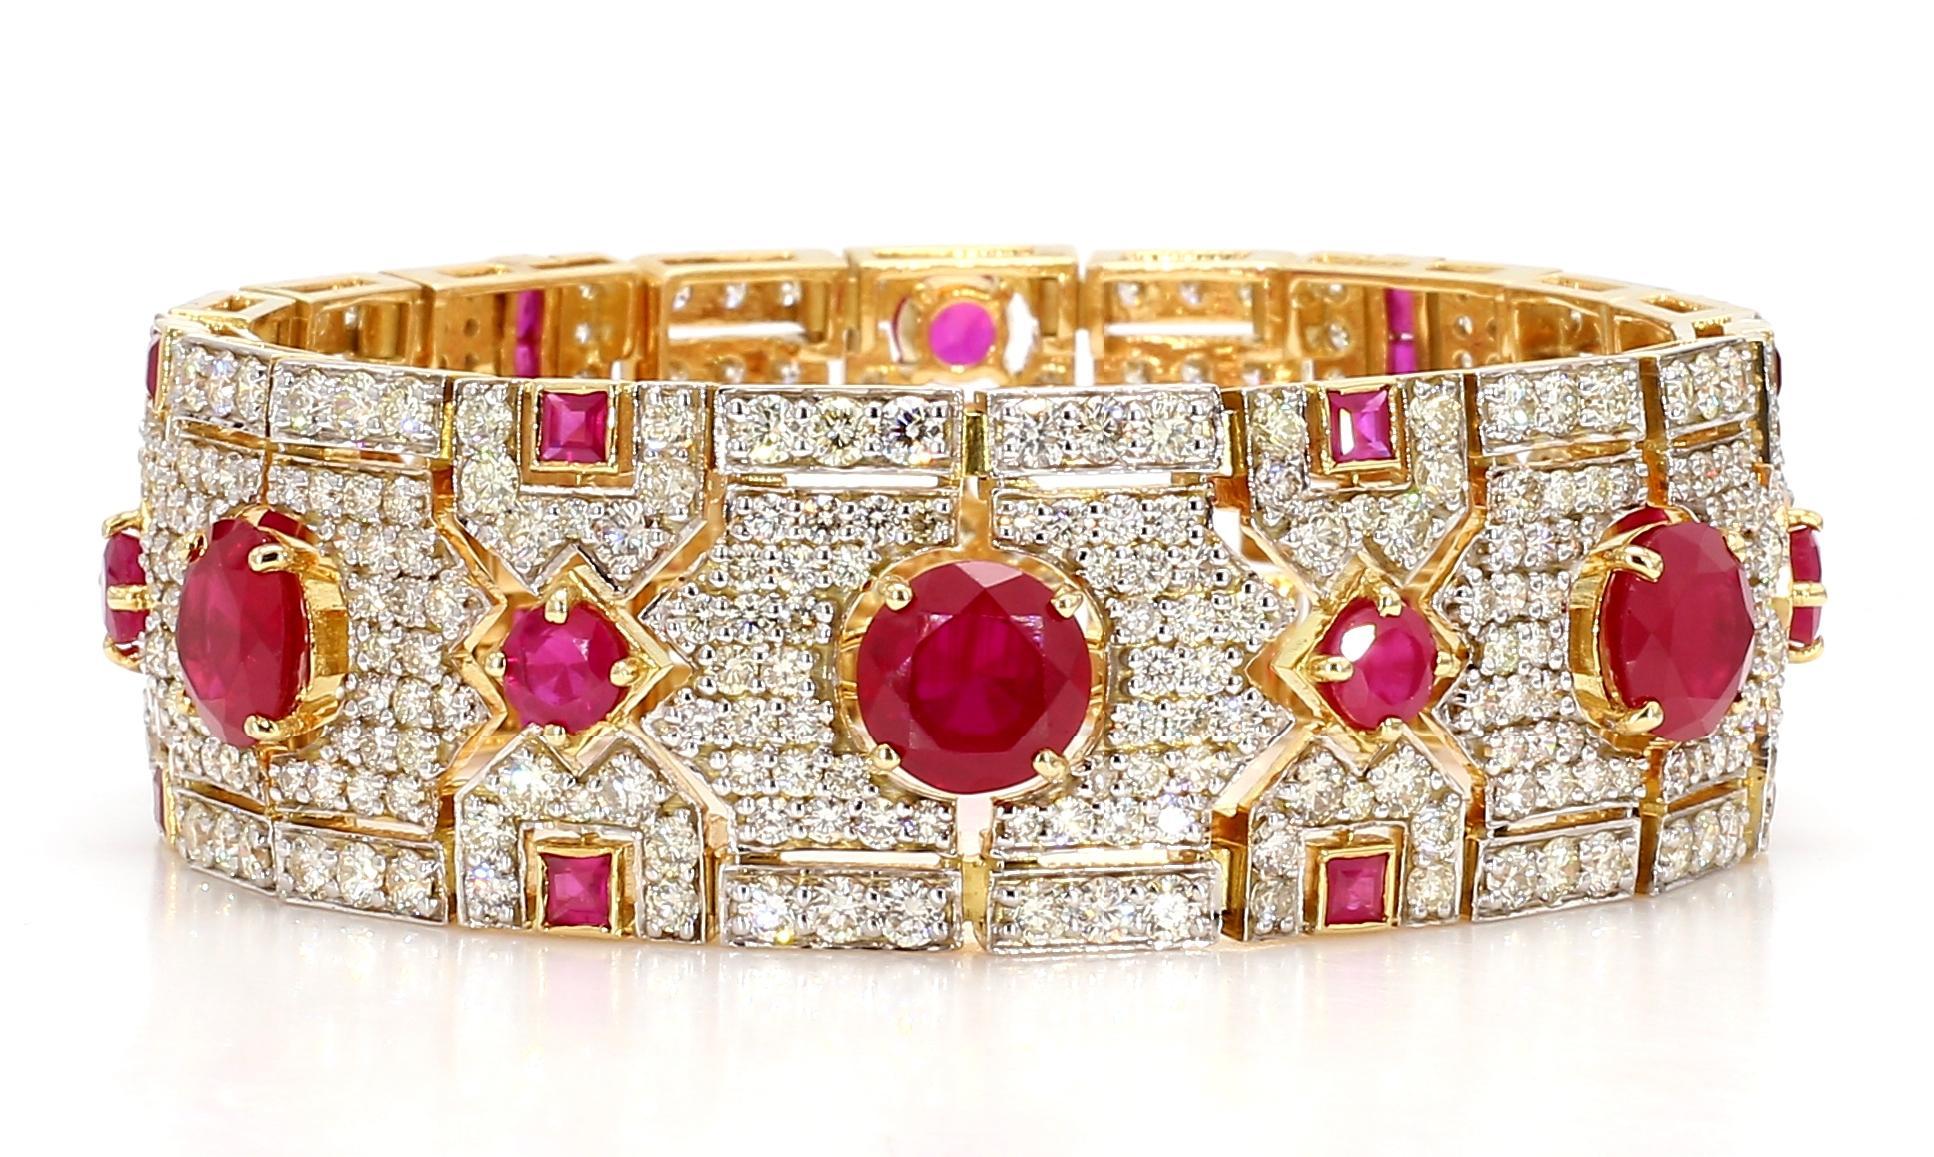 Le bracelet en rubis est un bijou exquis qui met en valeur la beauté et l'élégance intemporelles des rubis. Confectionné avec précision et finesse, ce bracelet dégage un charme luxueux, ce qui en fait l'accessoire idéal pour toute occasion ou